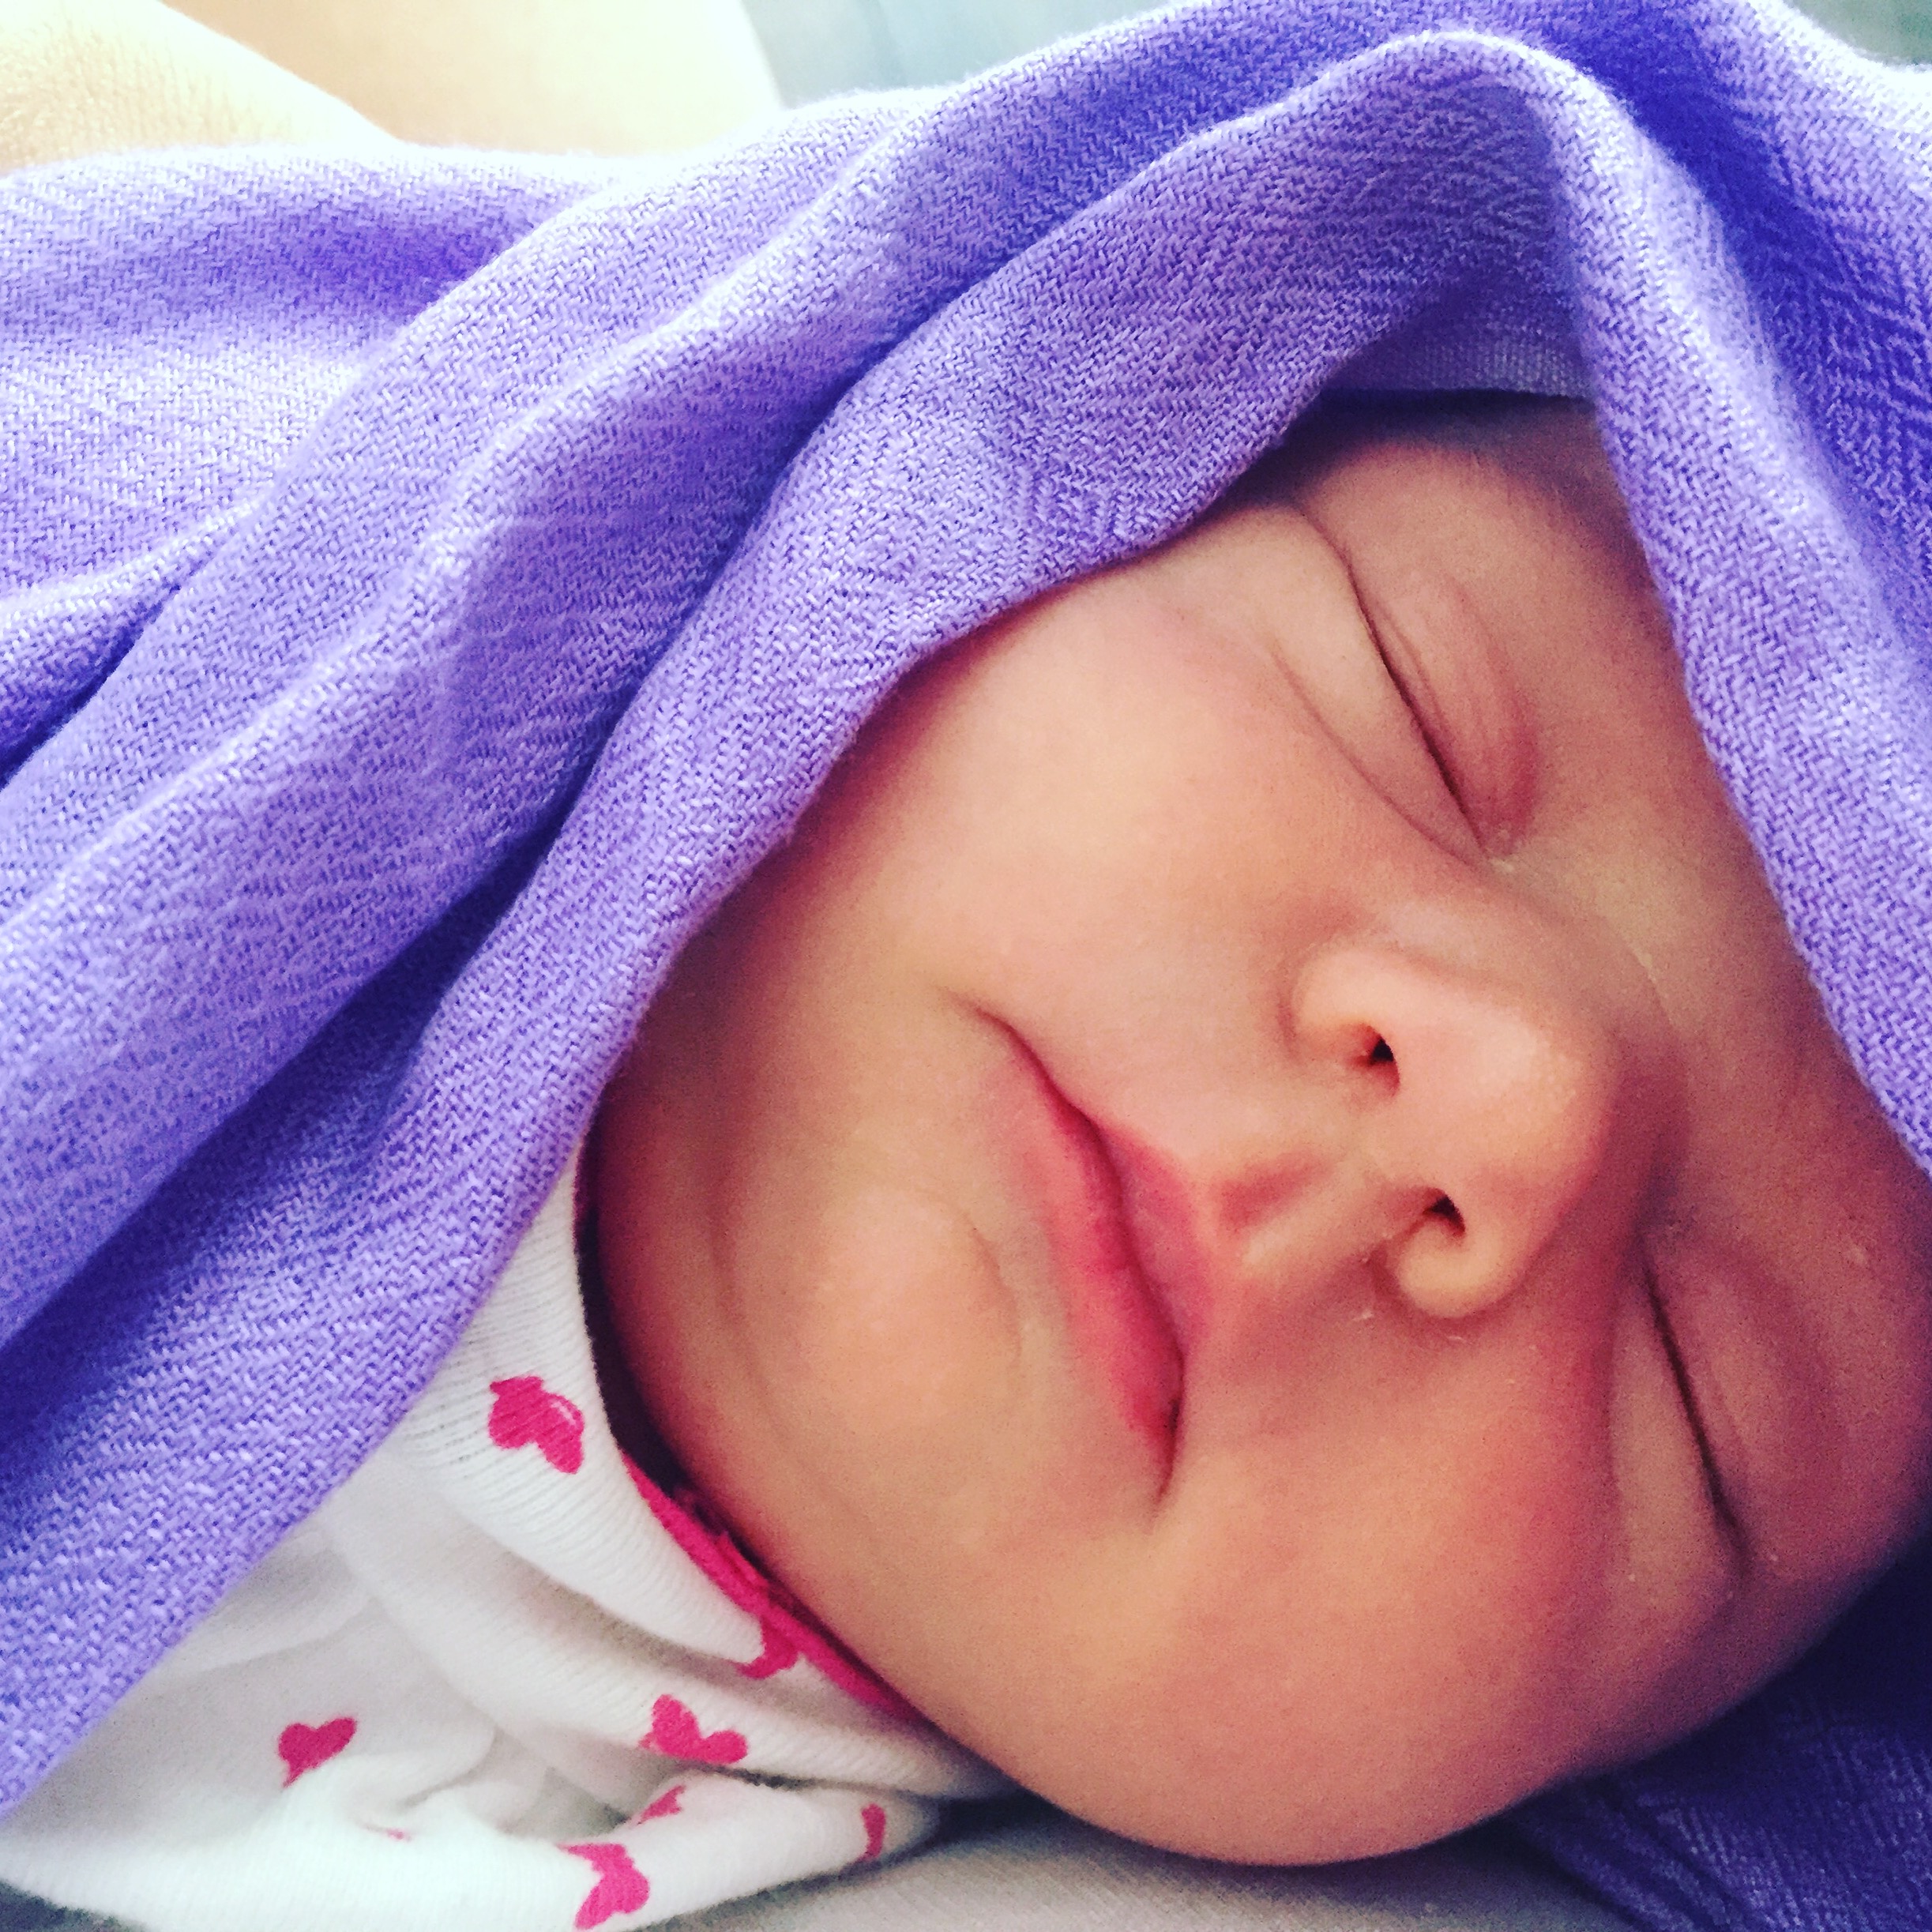 Baby sleeping with purple blanket